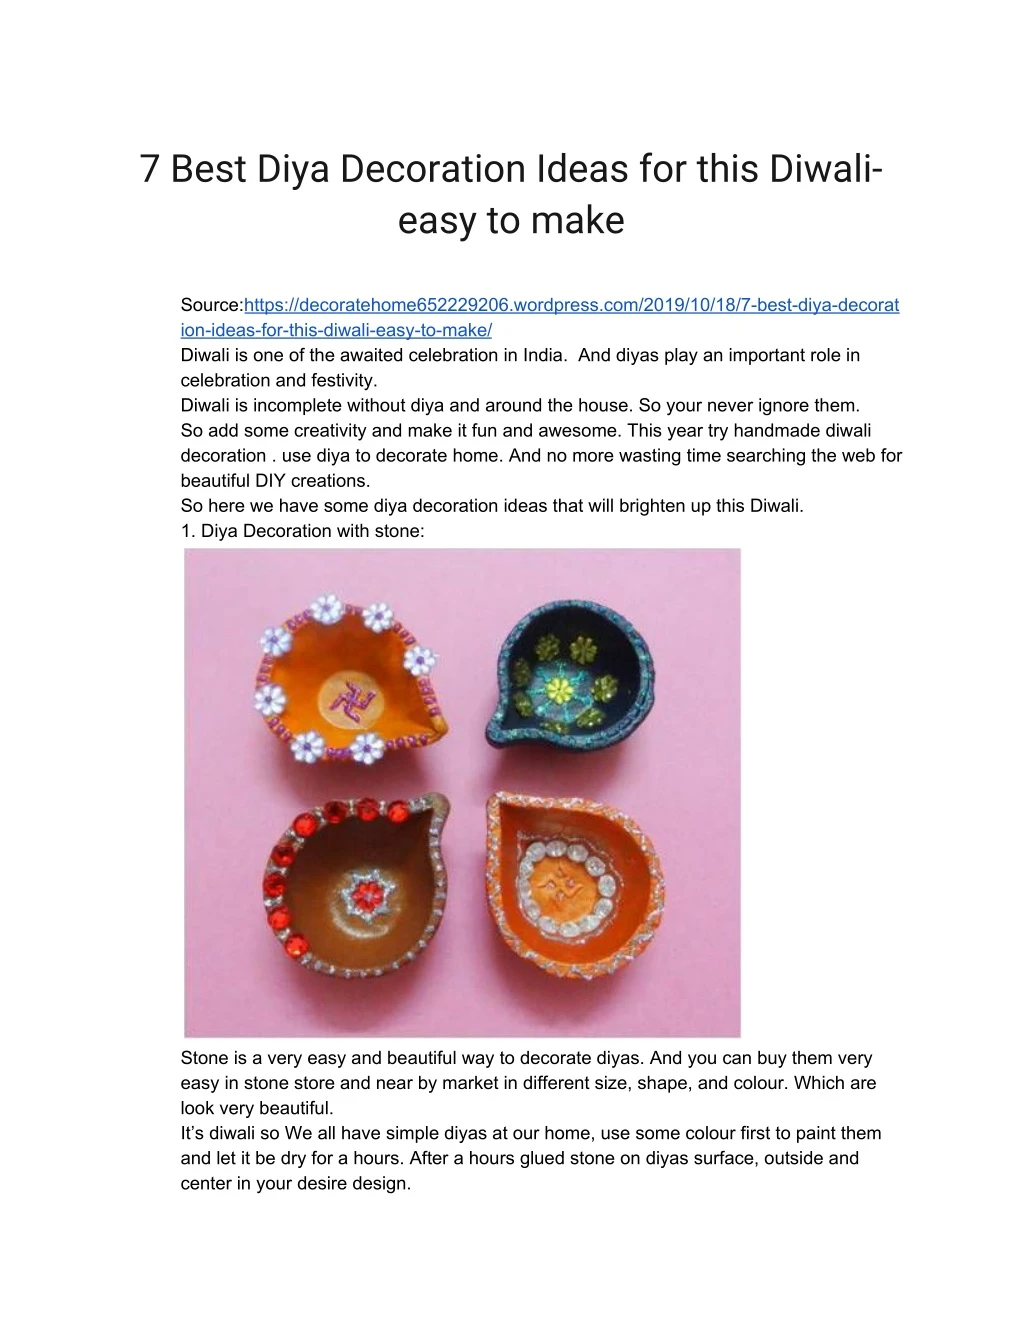 7 best diya decoration ideas for this diwali easy